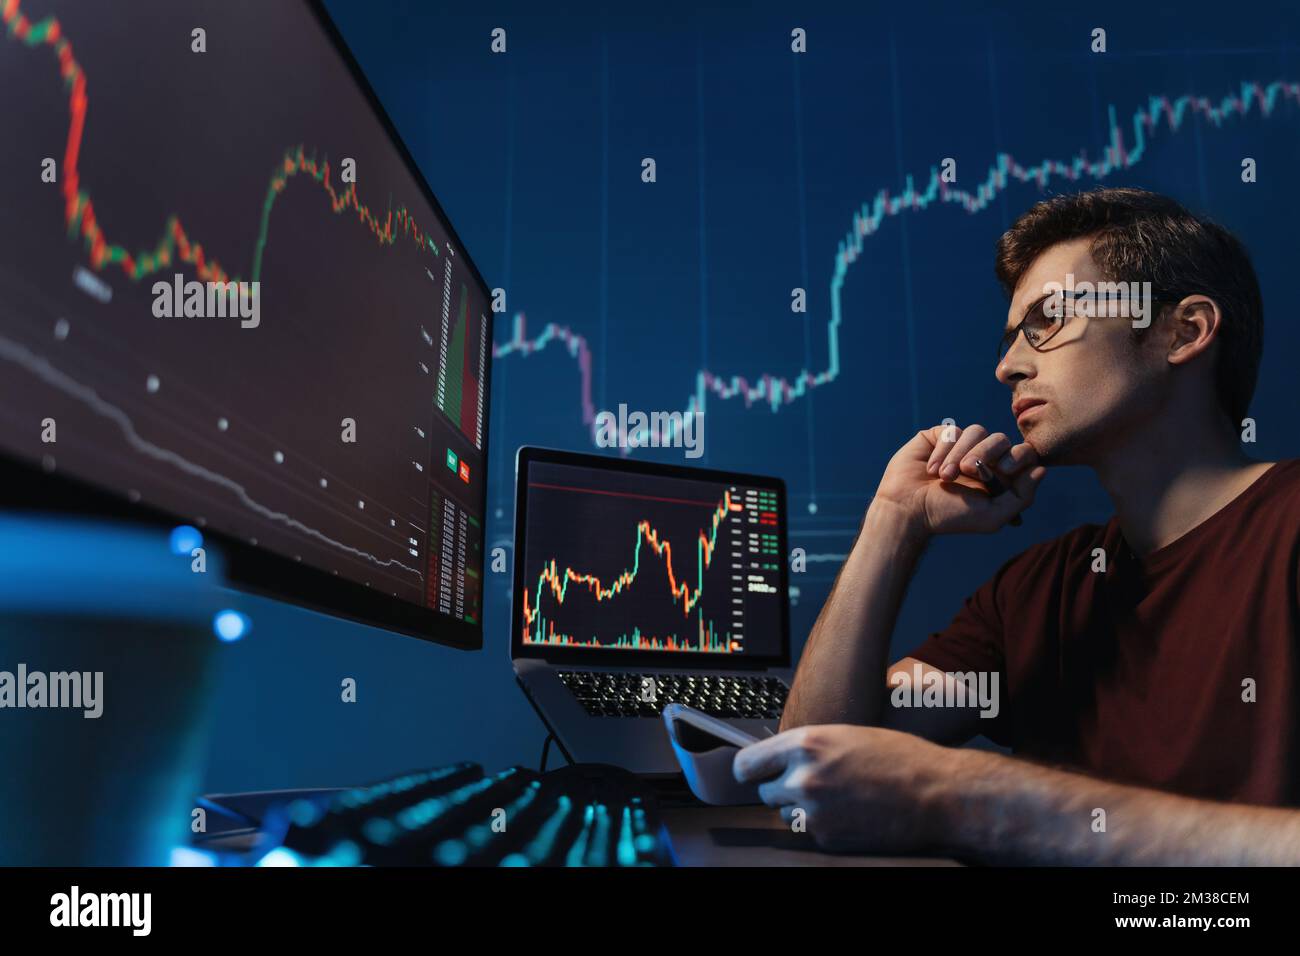 Un commerçant sérieux de crypto regardant l'écran avec un diagramme de chandelier, tenant un stylo et un bloc-notes, prenant des notes, analysant les risques de trading de crypto-monnaie dans les conditions de la crise financière mondiale Banque D'Images